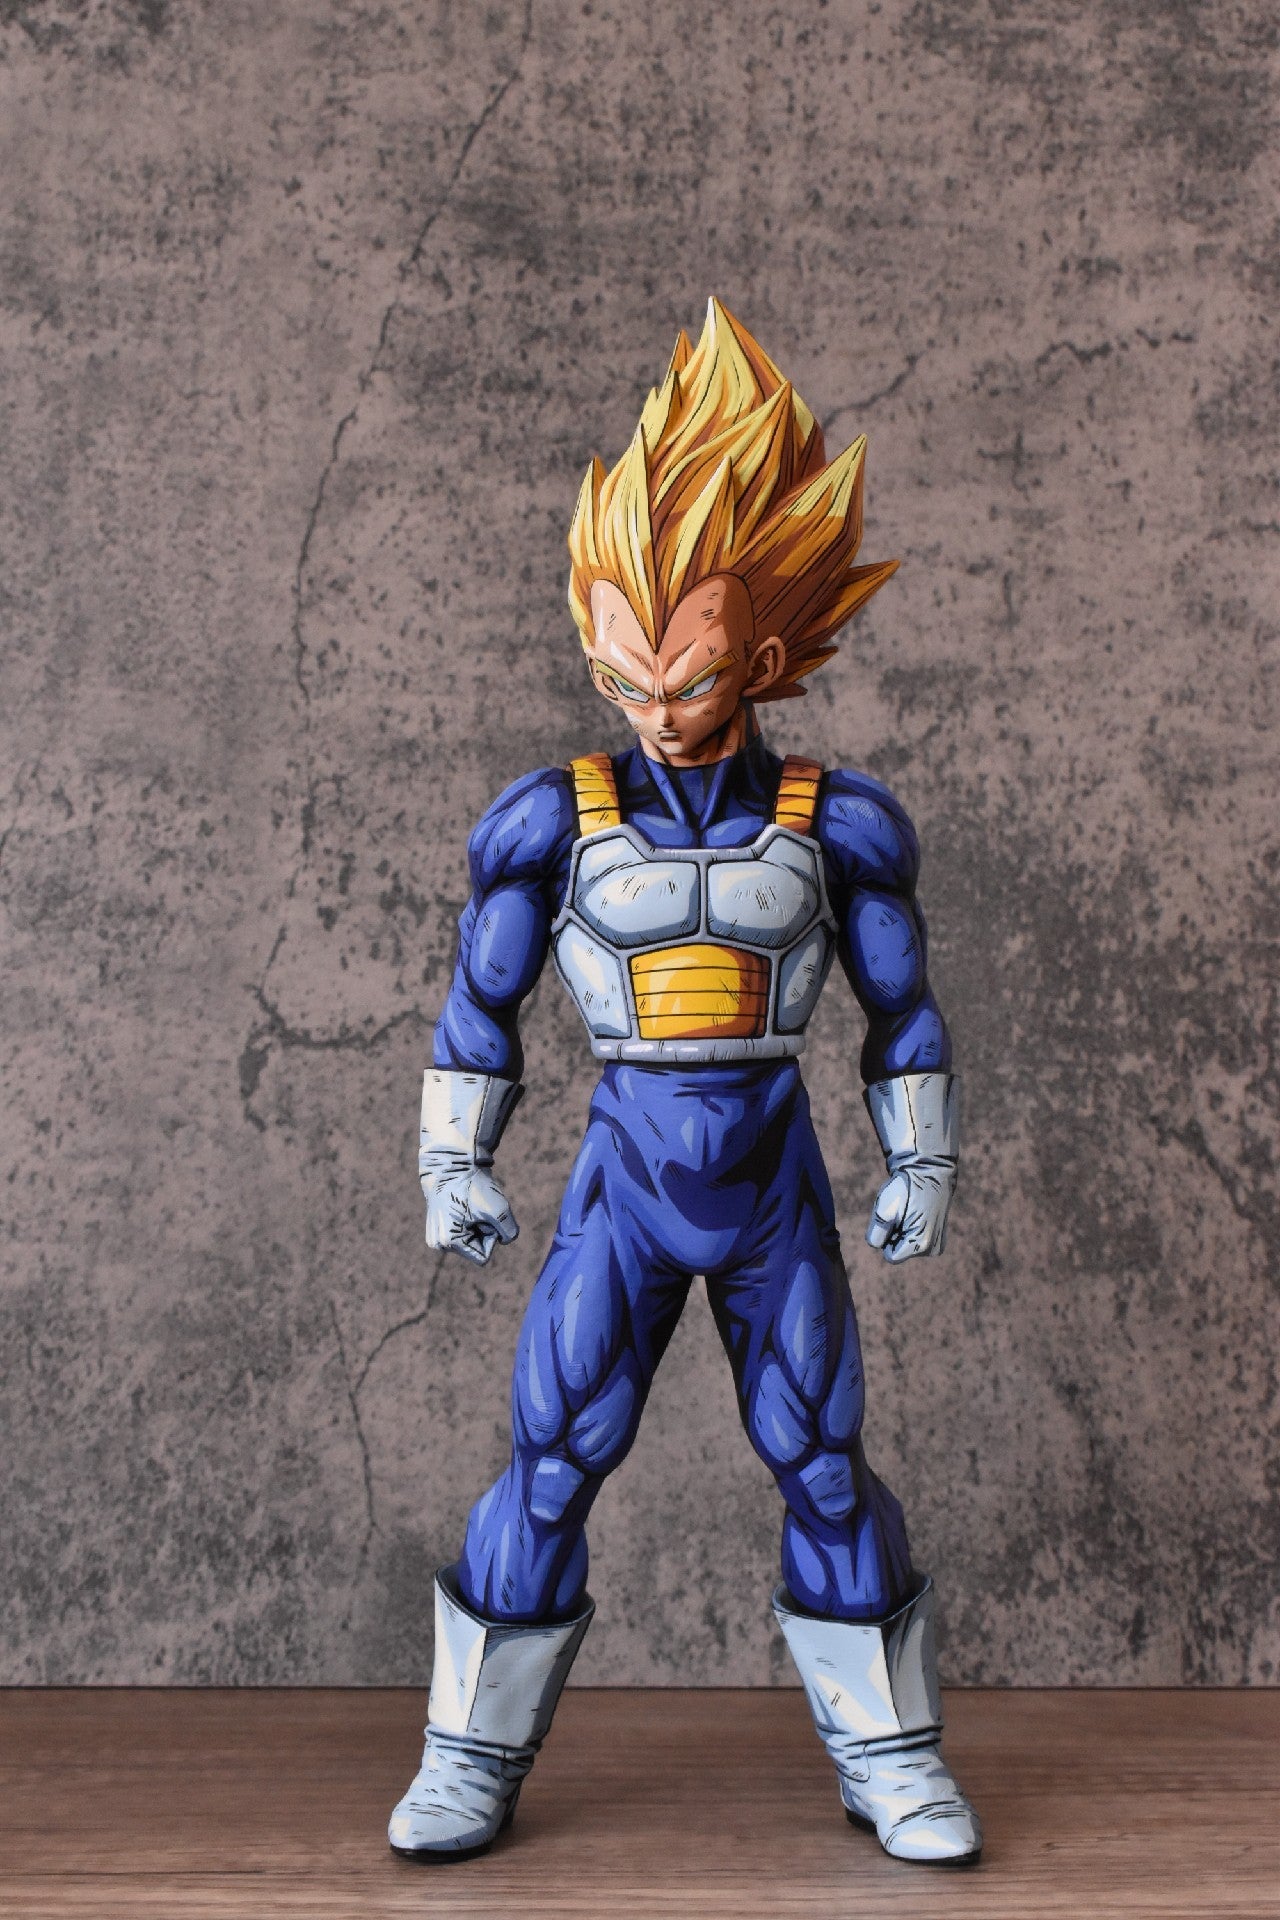 Repainted Dragon Ball figure, Super Saiyan 2 Vegeta - Lyk Repaint